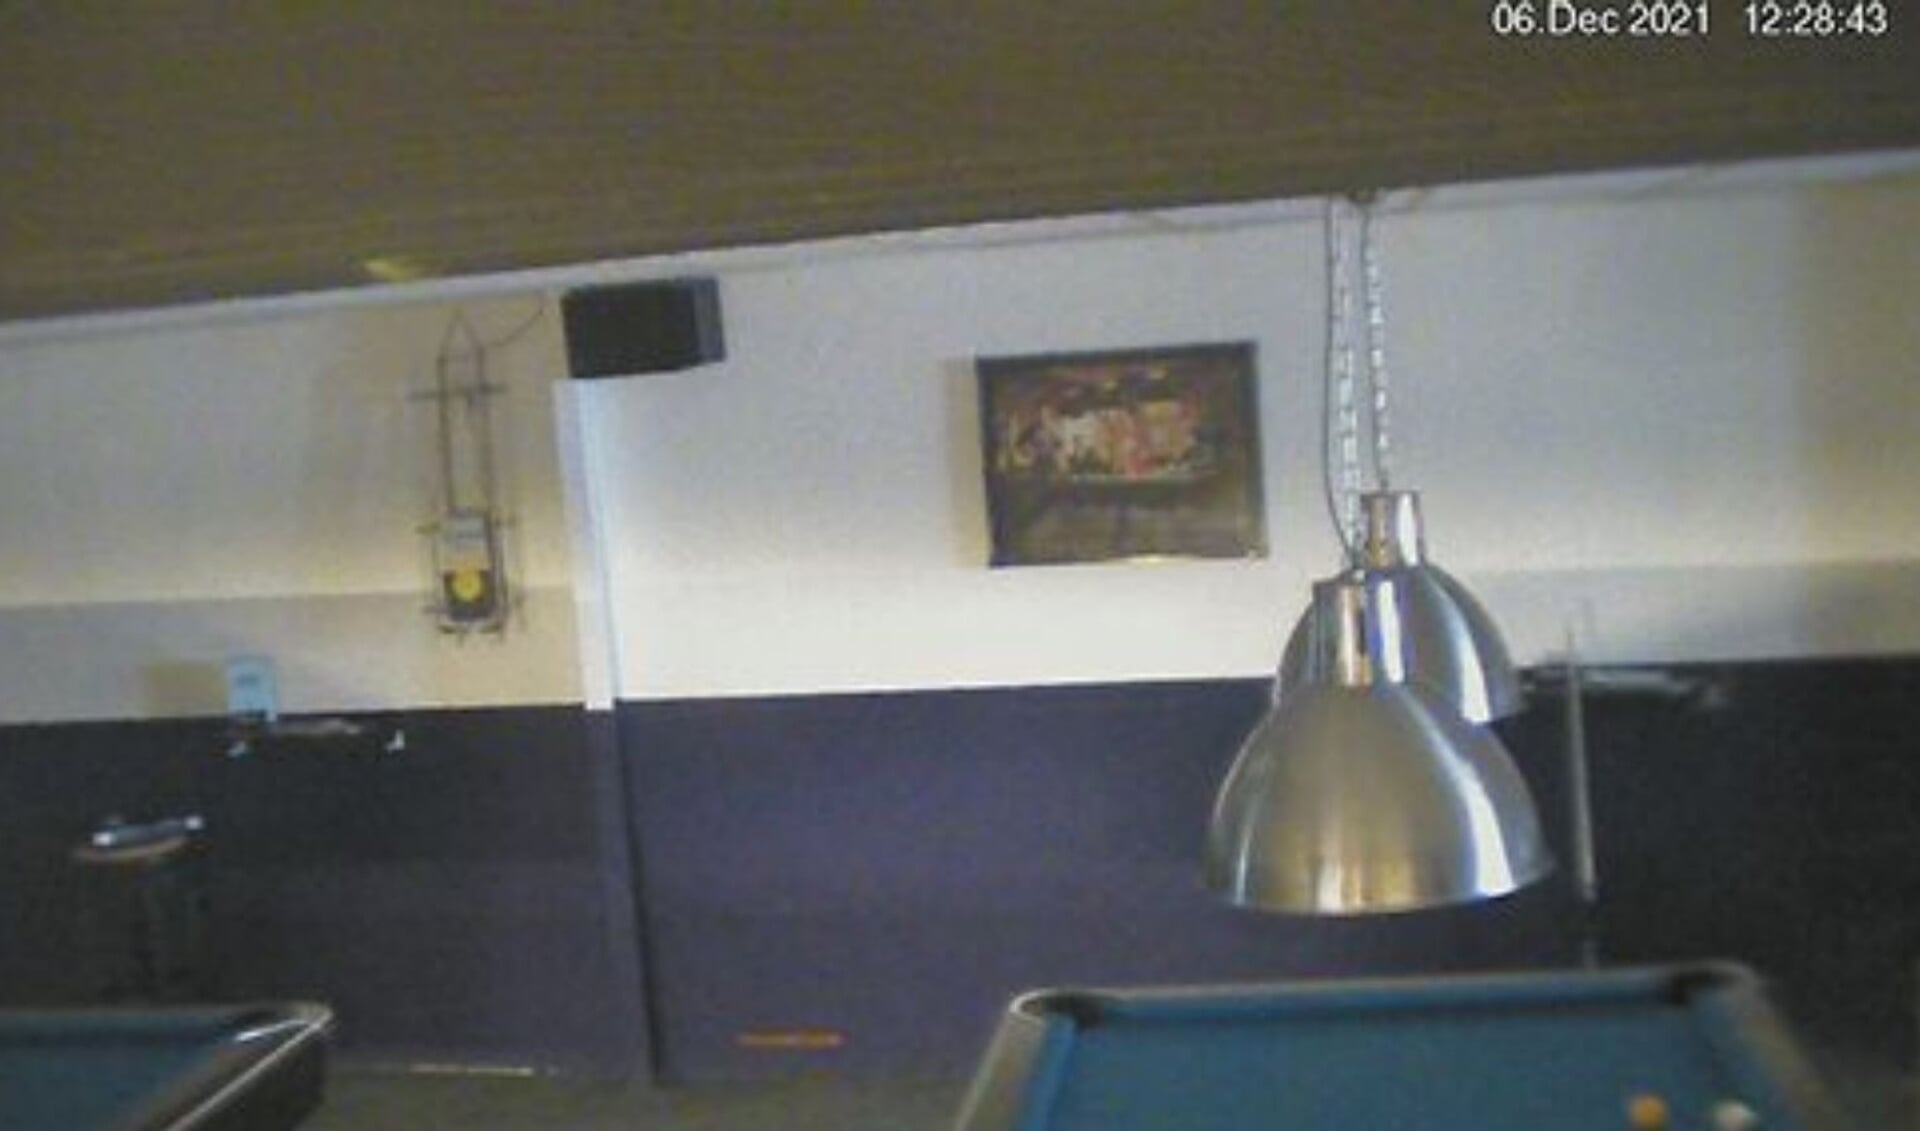 Livebeeld van een poolcafé op Insecam, waarvan de camera volgens Insecam.org ergens in Amersfoort hangt.